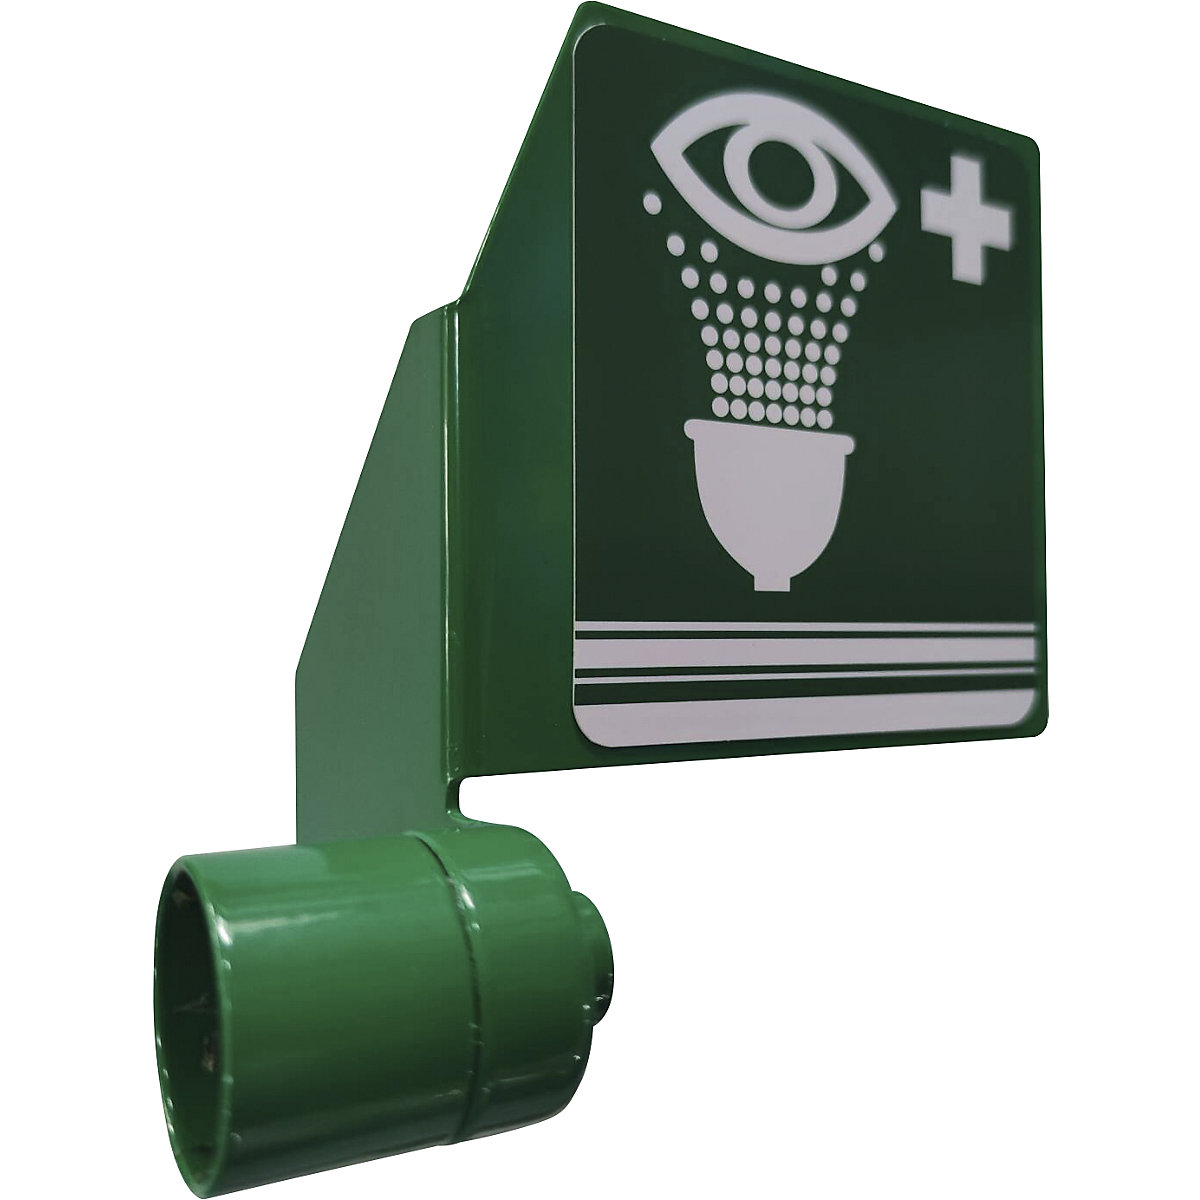 Placă de acționare, pentru duș ocular de urgență și duș de urgență pentru corp, verde-1